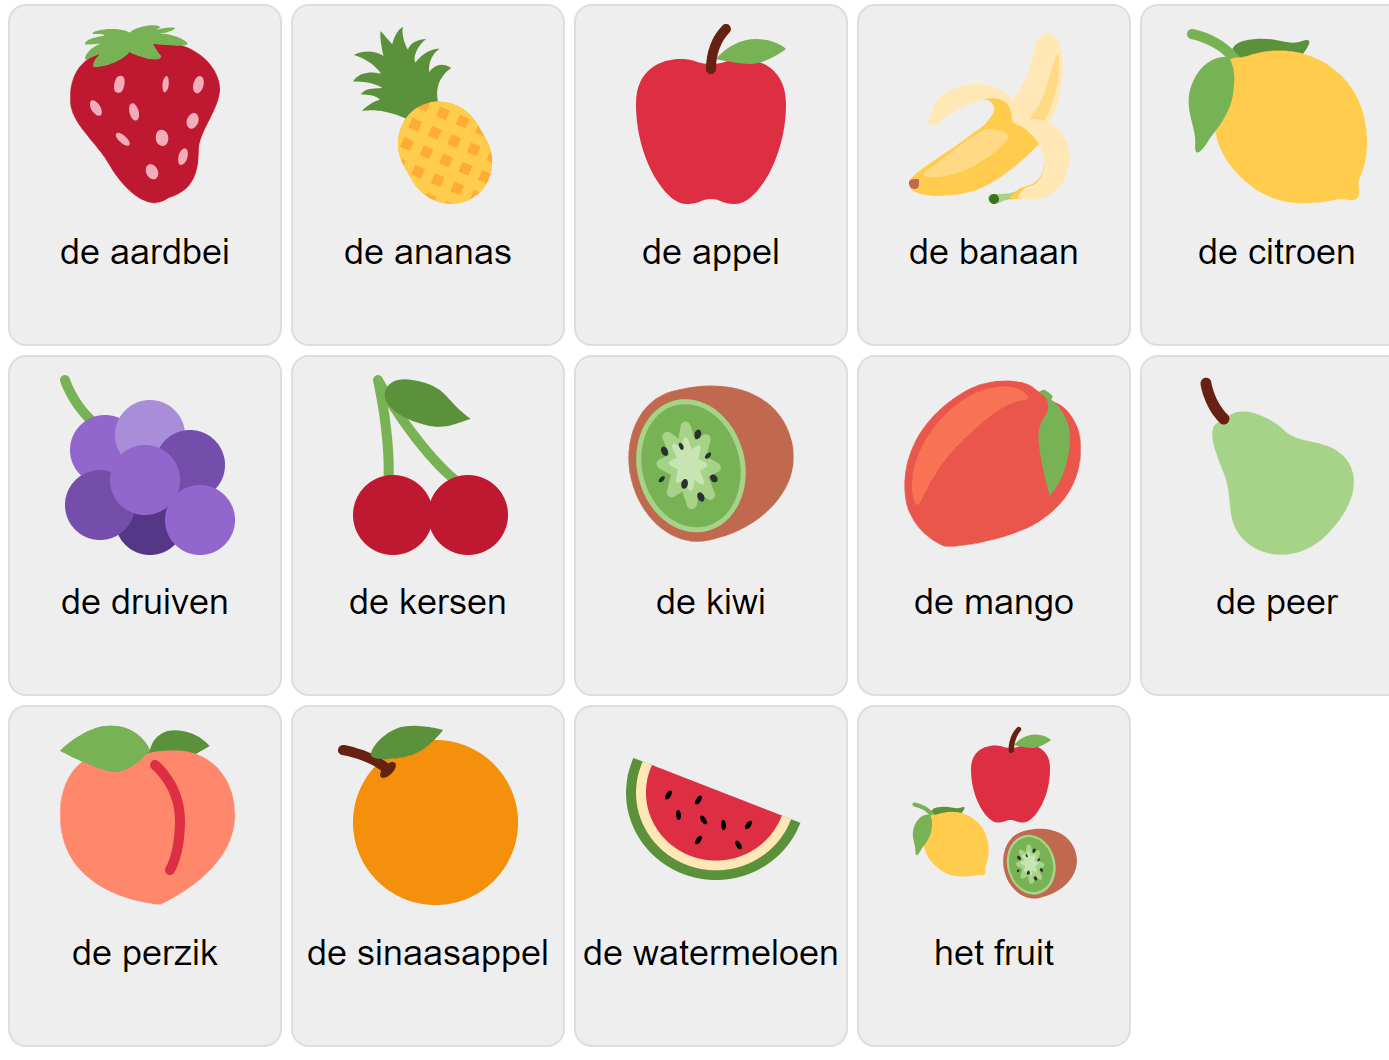 Frukter på nederländska